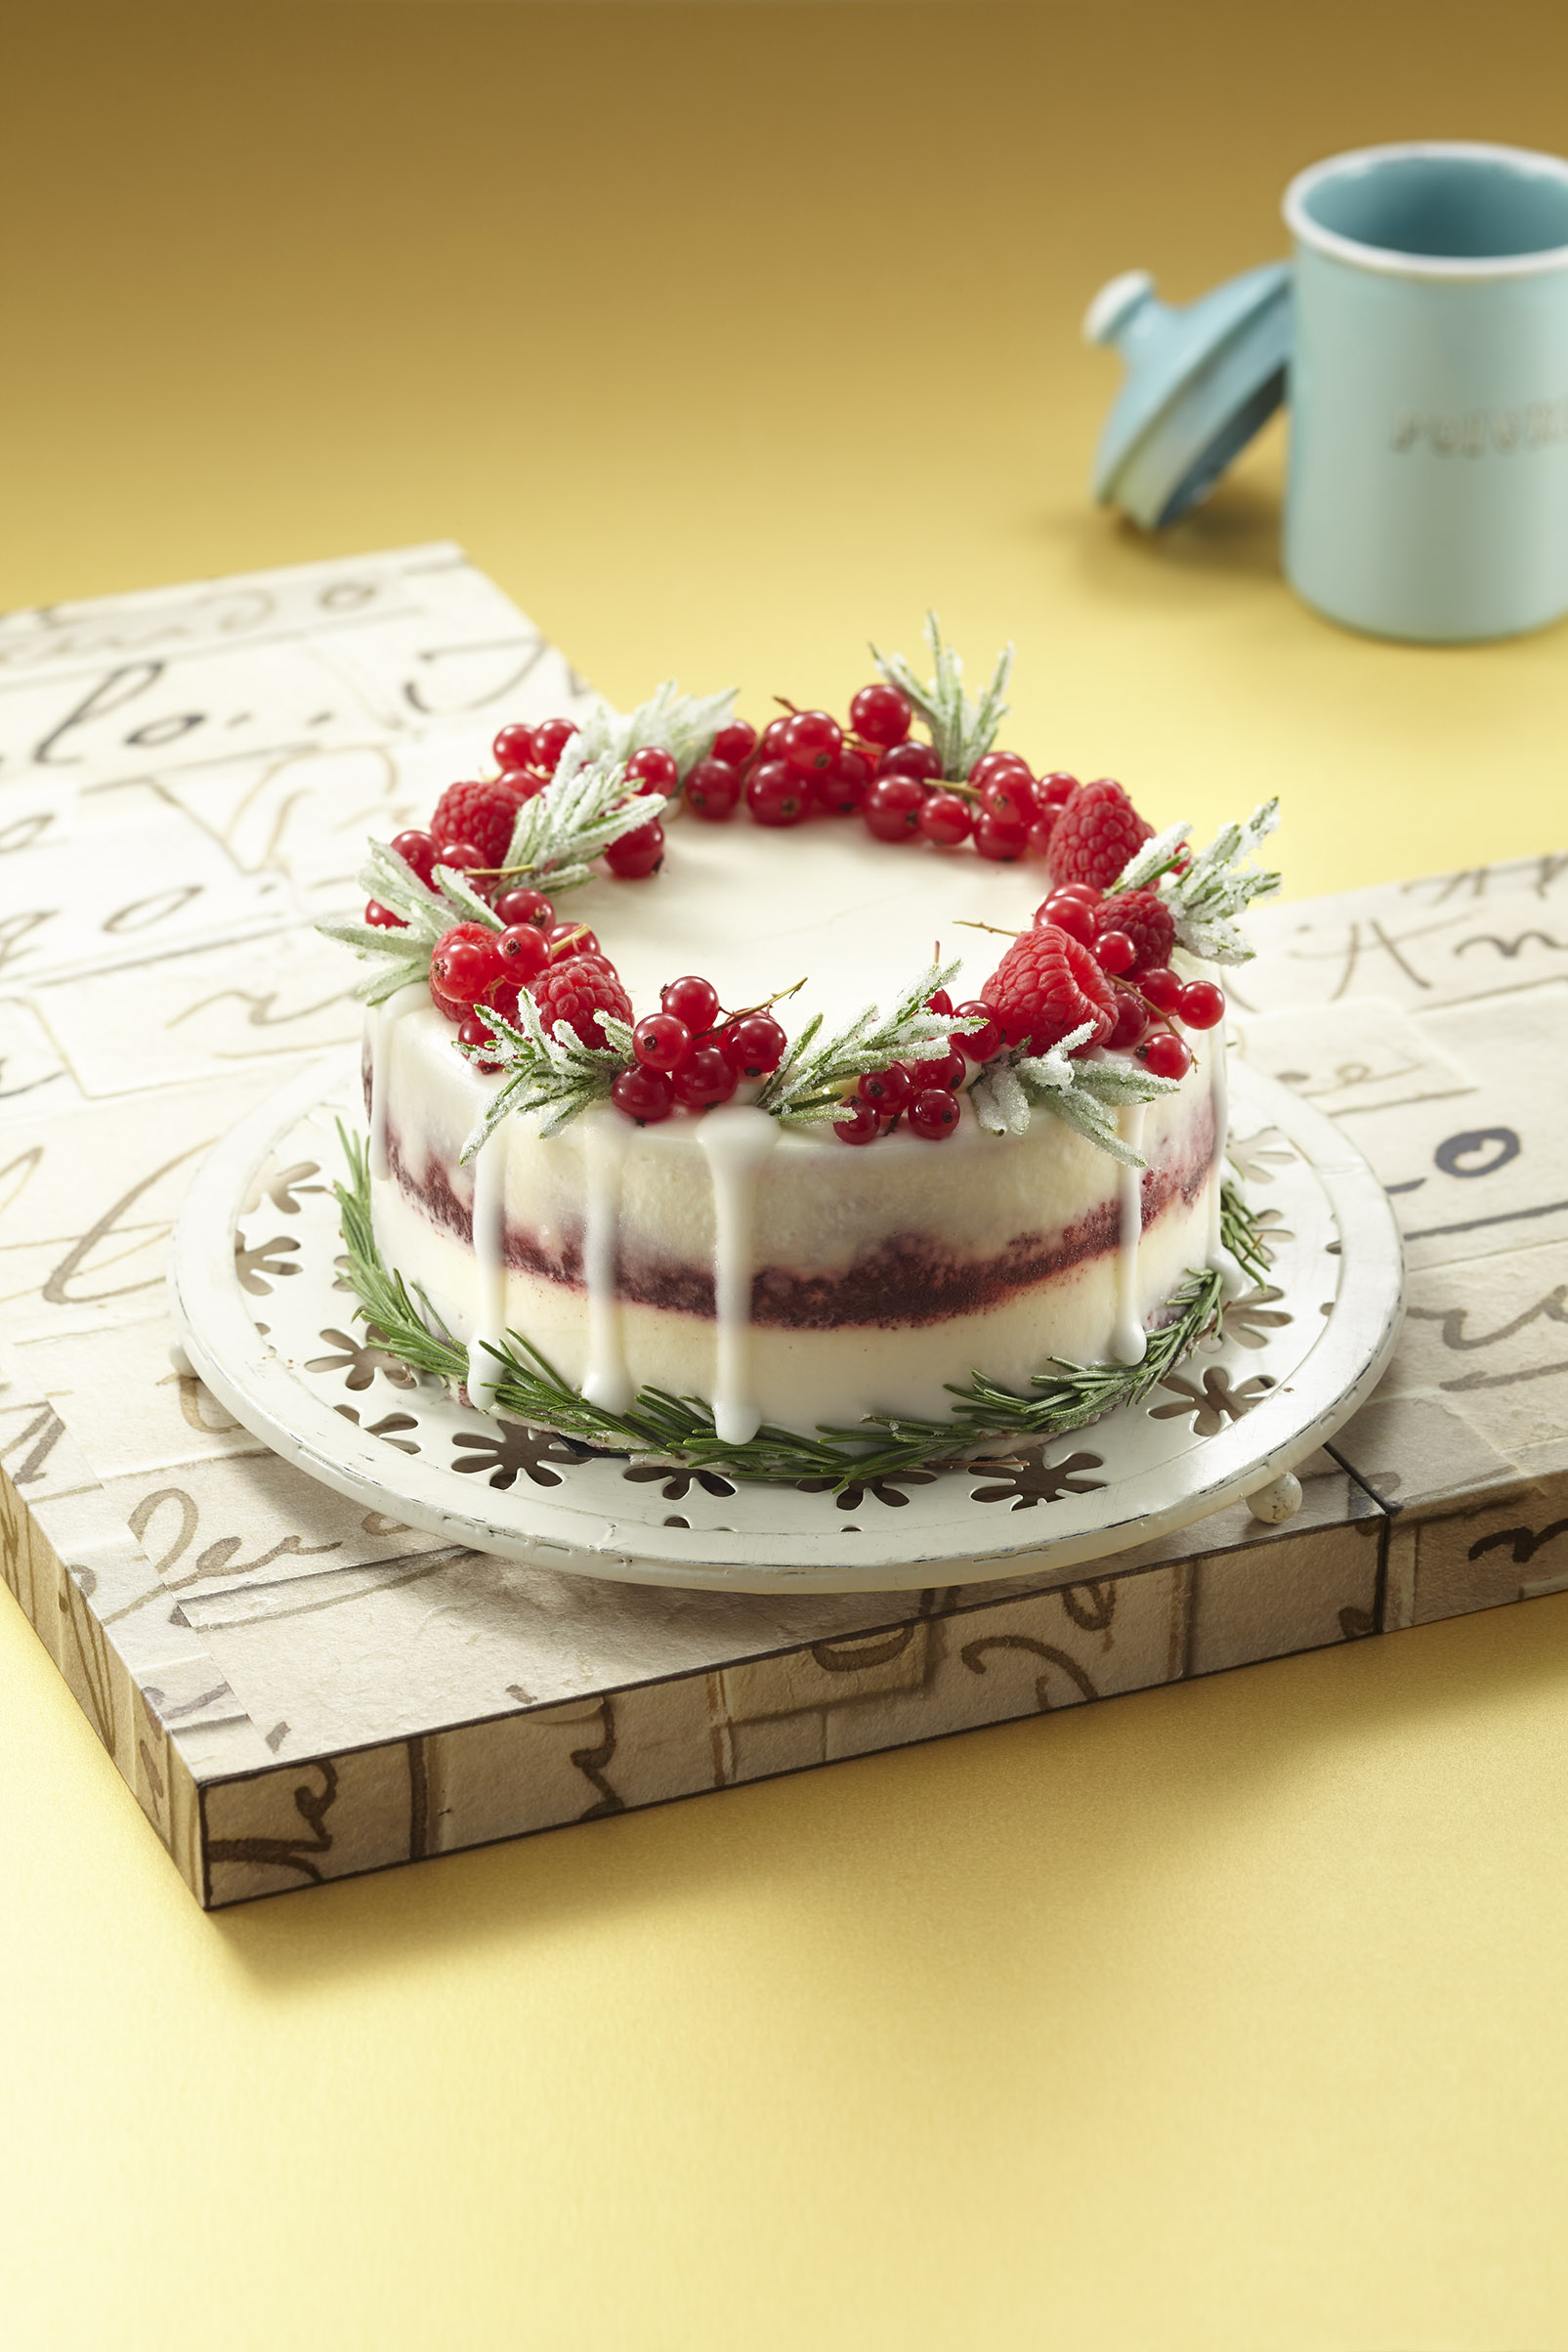 小田急百貨店新宿店ではクリスマスケーキの予約が10月12日 土 からスタートします 株式会社小田急百貨店のプレスリリース